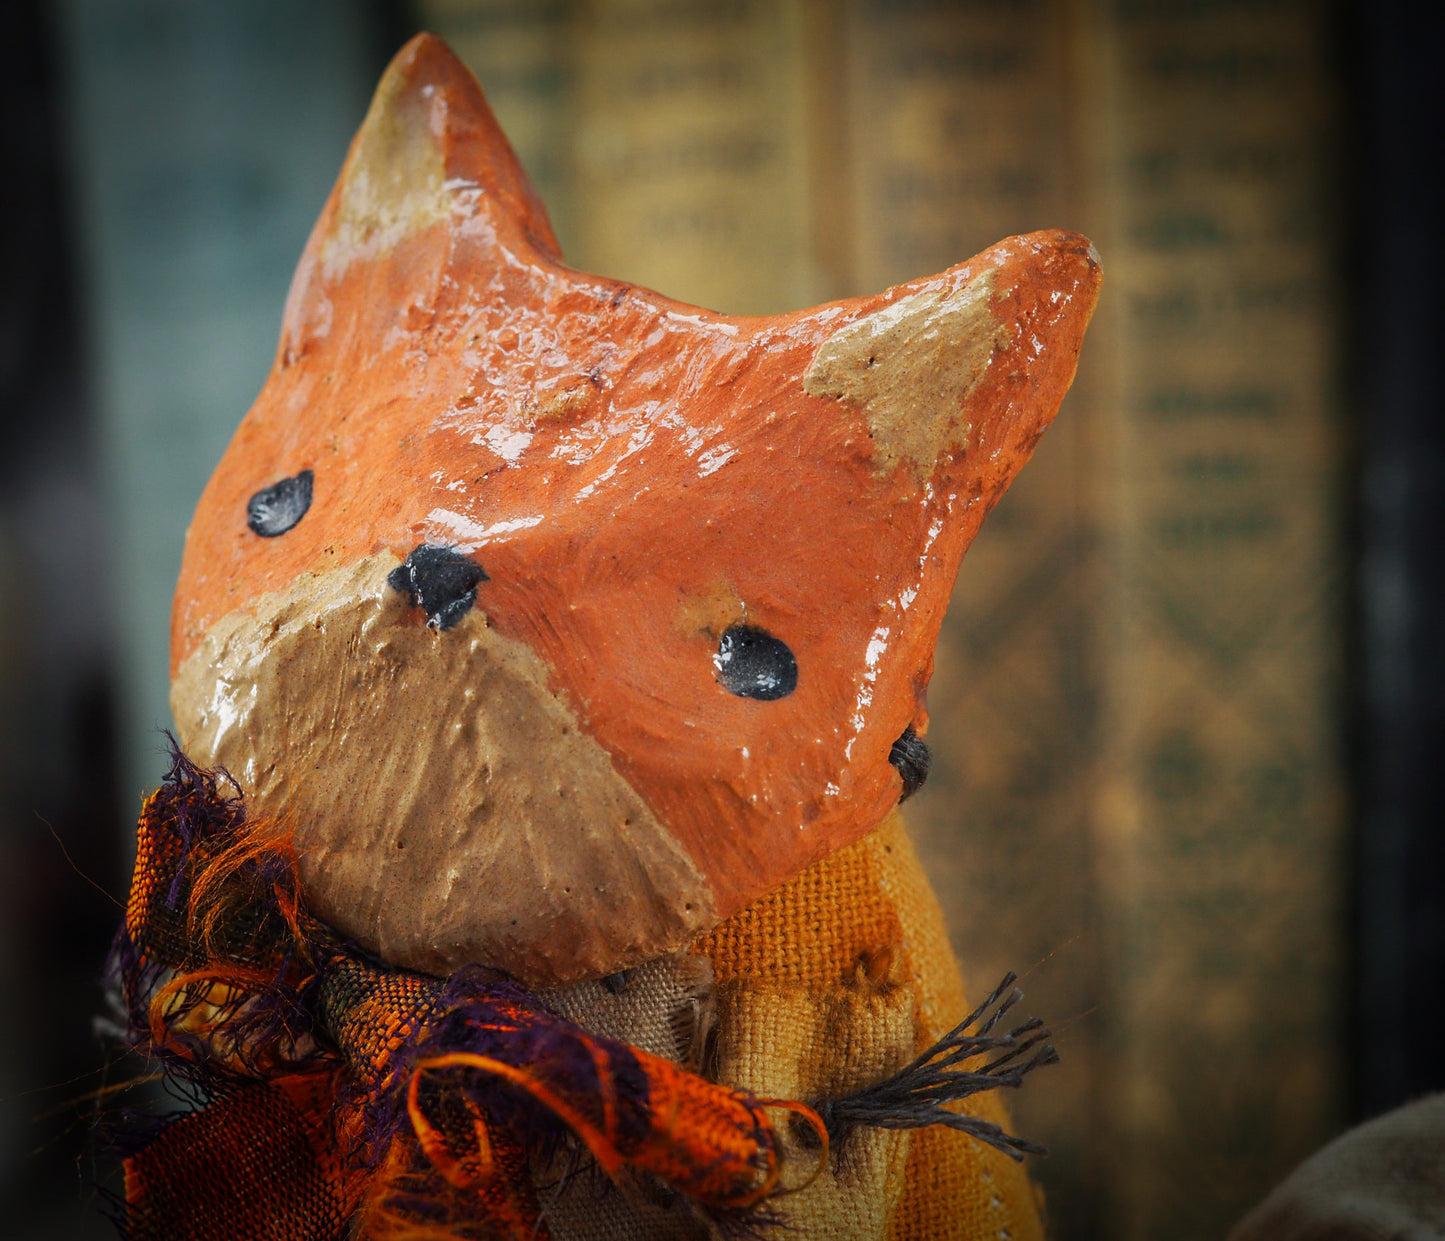 FOXBLOSSOM: THE RED FOX